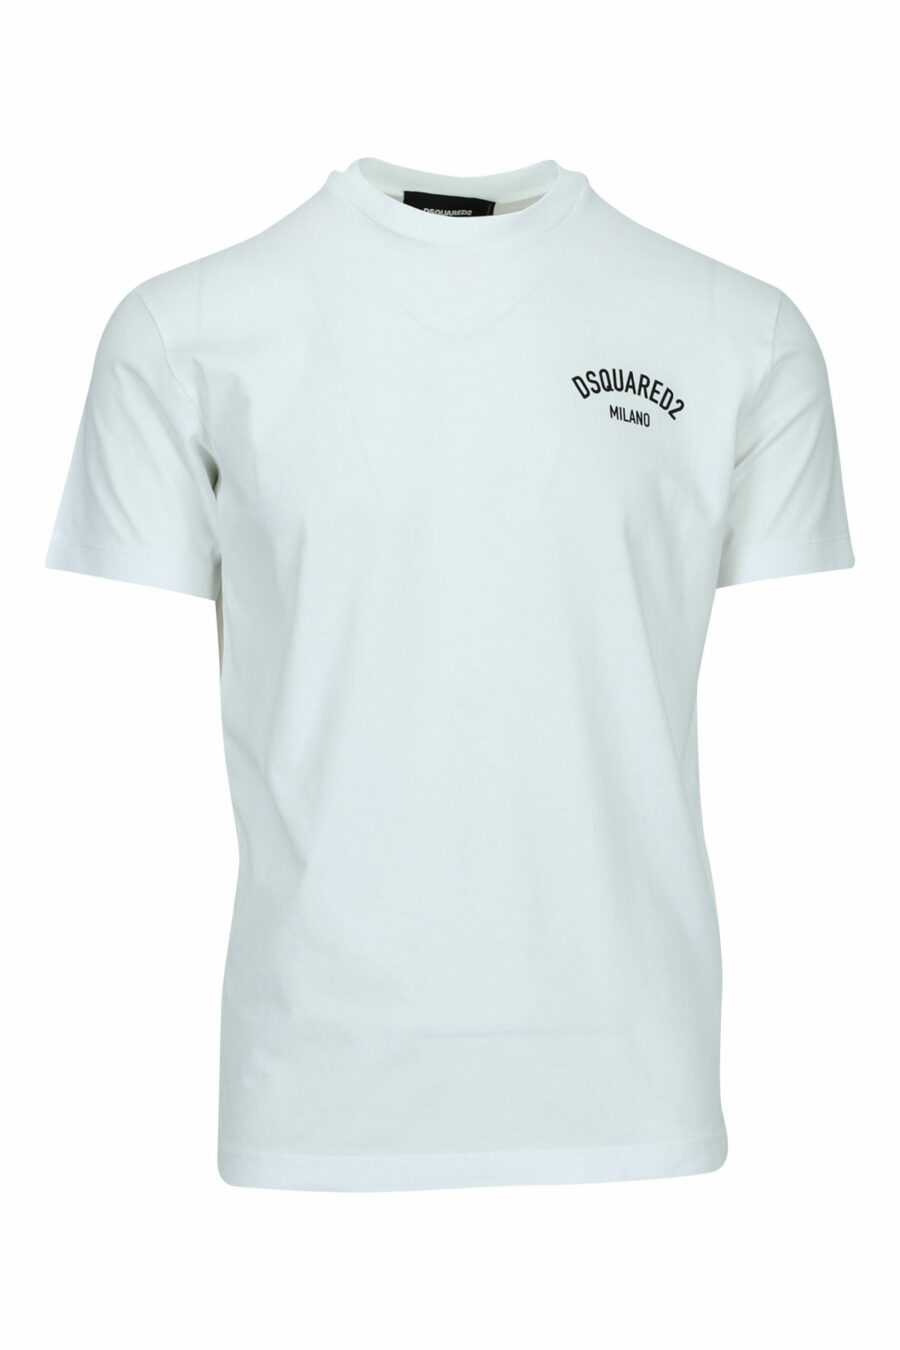 Weißes T-Shirt mit gefaltetem "milano"-Logo - 8054148570989 skaliert